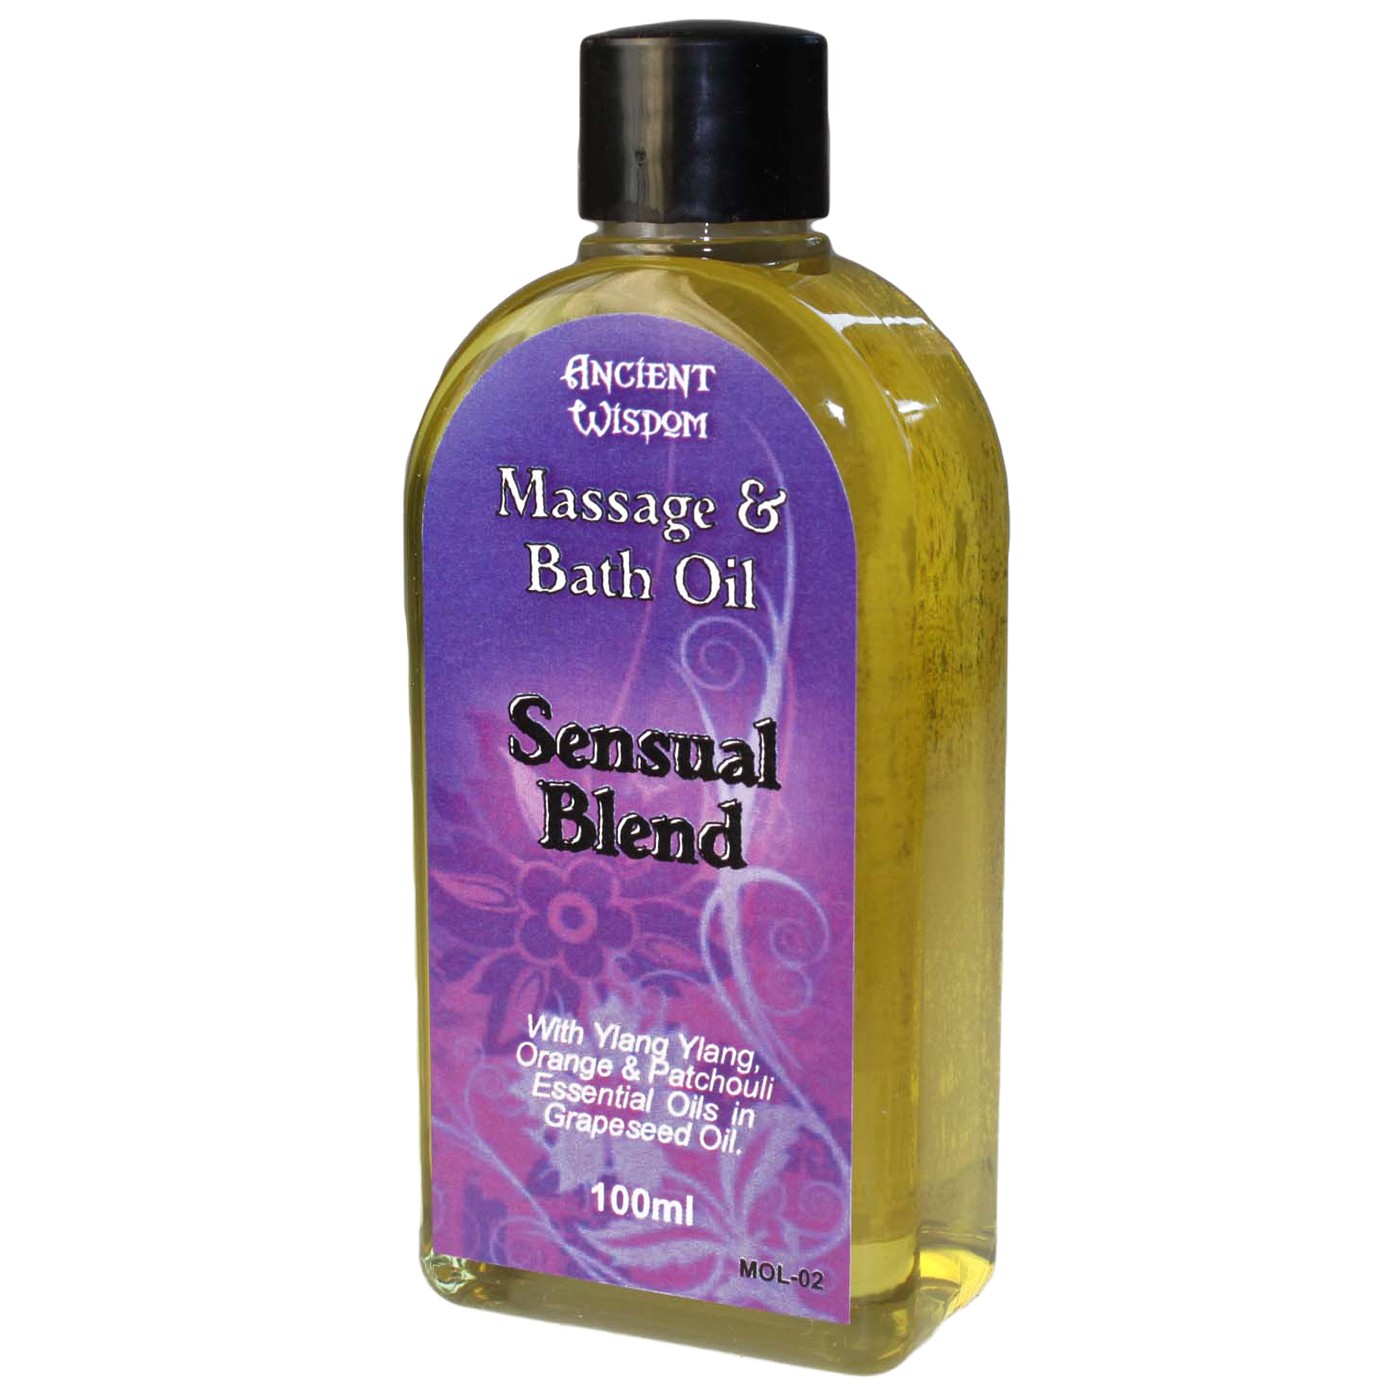 Sensual Massage Oil